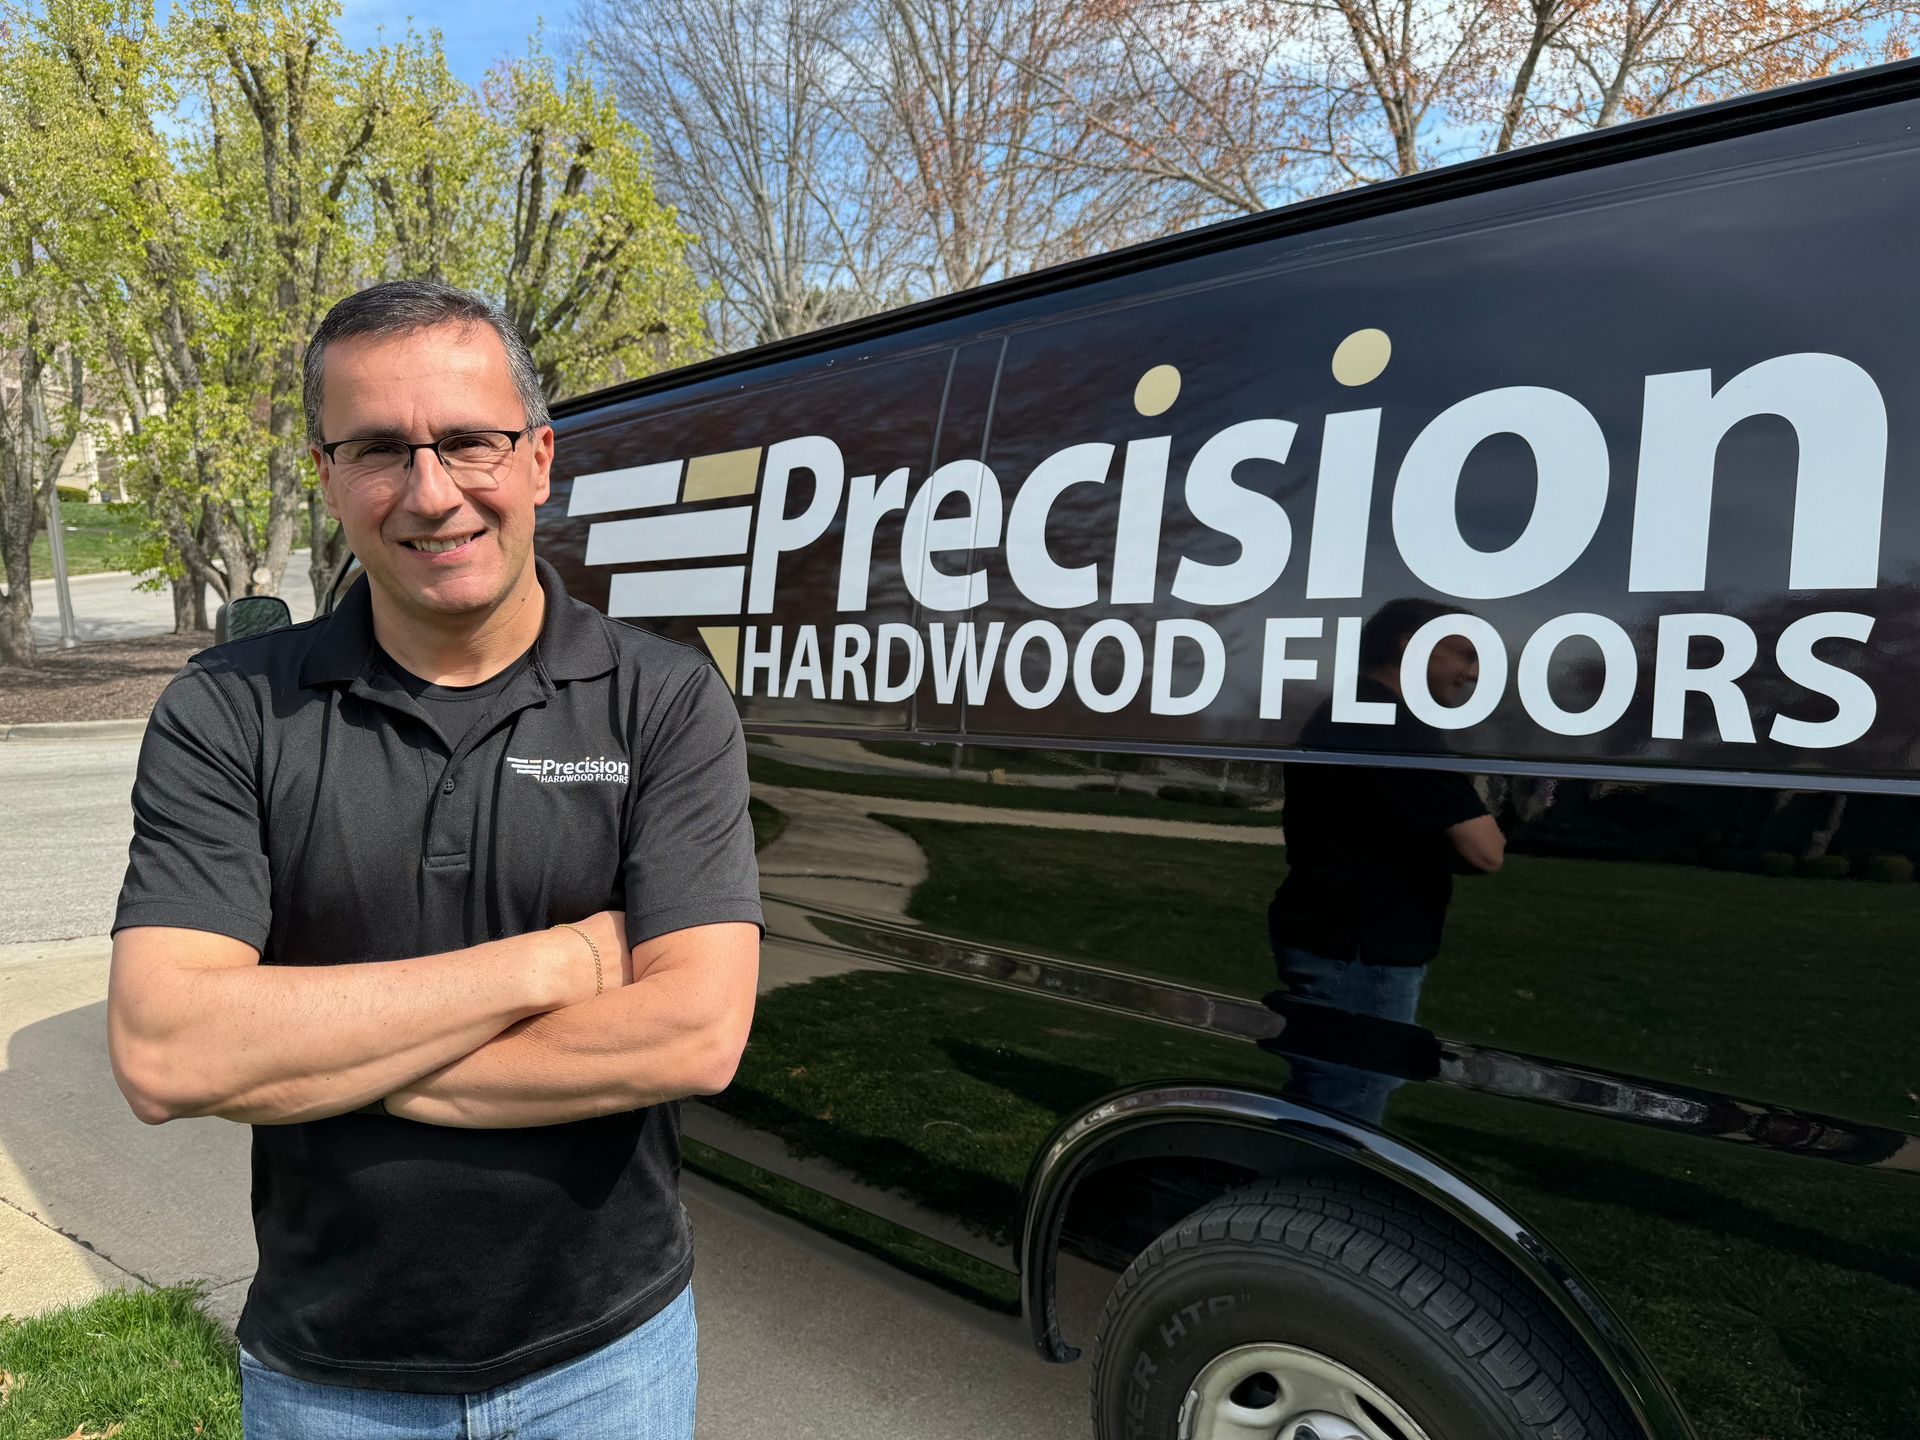 Cris Barbosa is standing in front of a precision hardwood floors van.